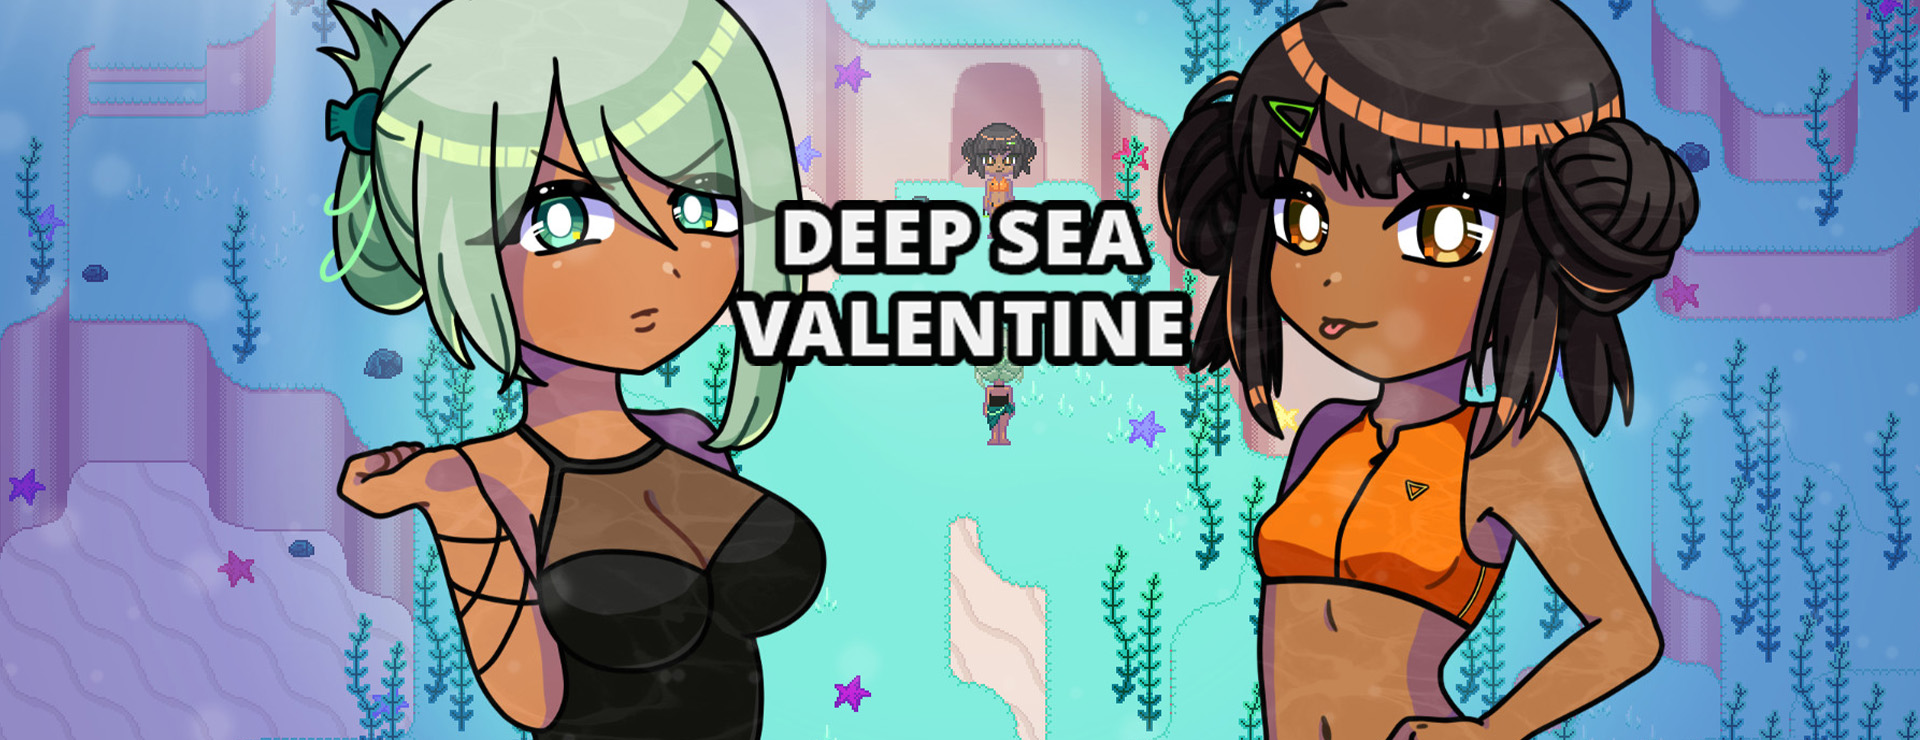 Deep Sea Valentine - Roman Visuel Jeu